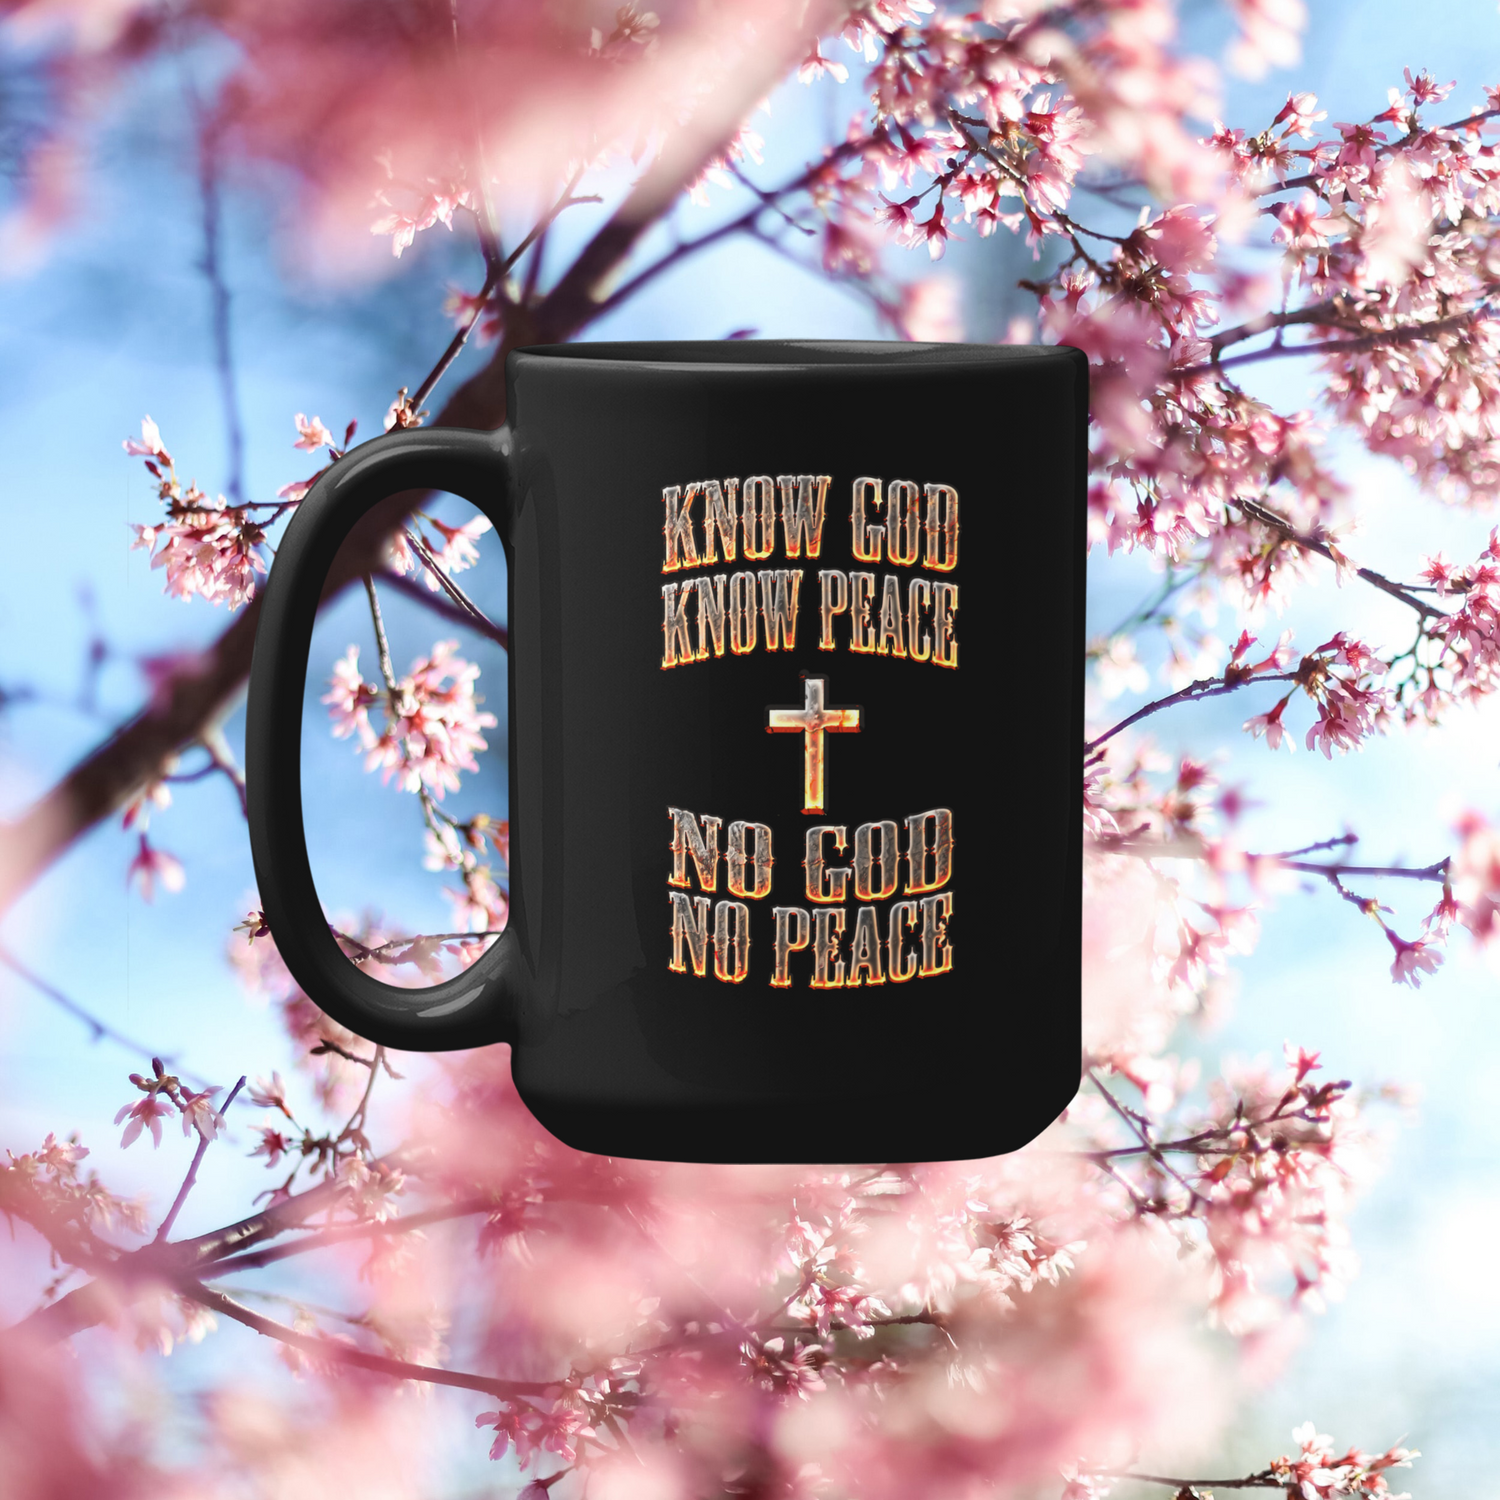 Easter theme mug